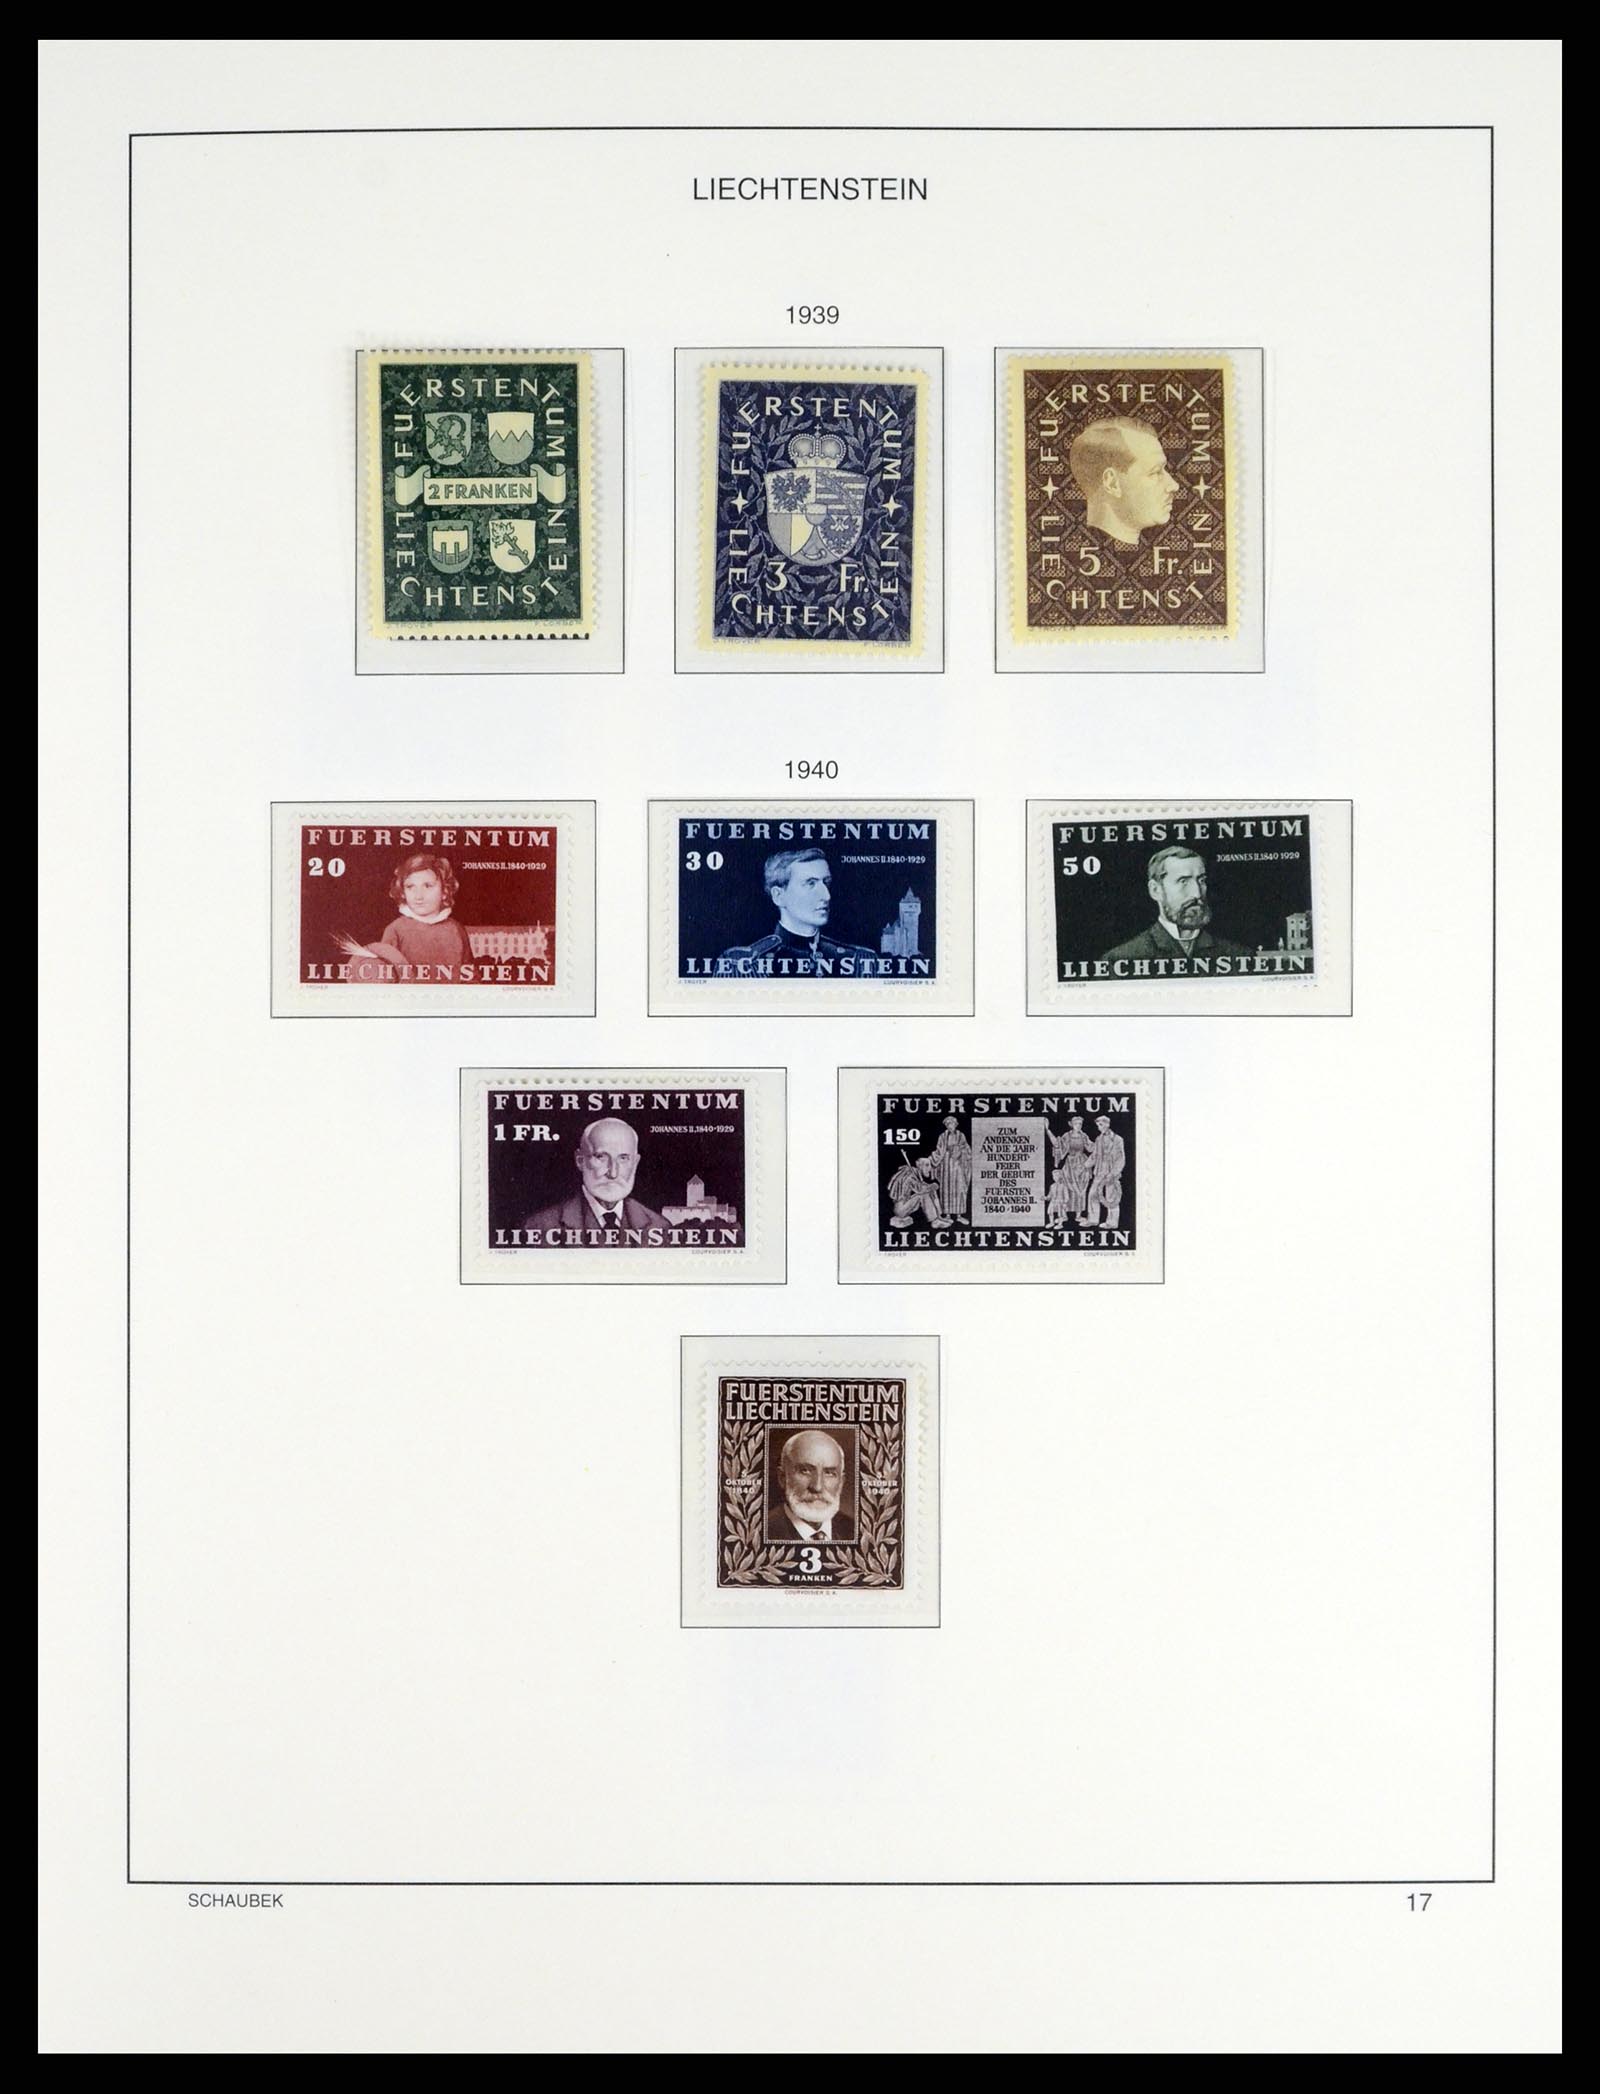 37547 020 - Stamp collection 37547 Liechtenstein 1912-2011.